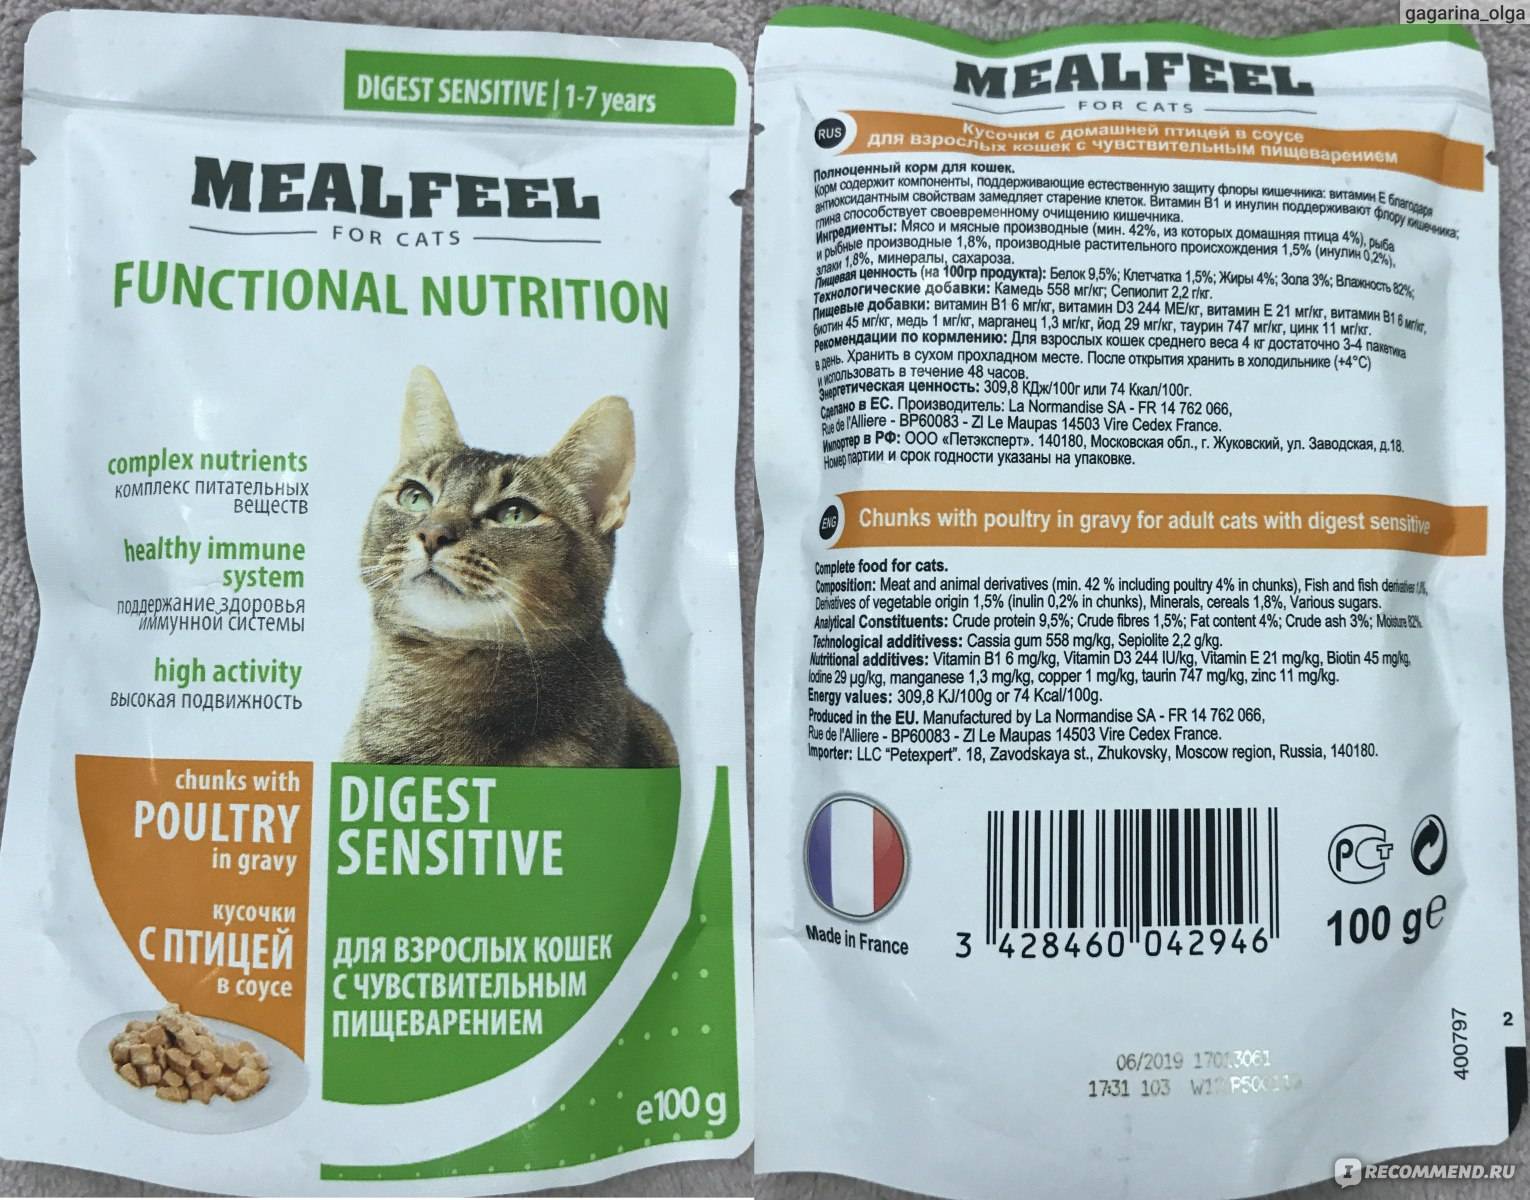 Сравнение и анализ кормов для кошек по составу: какие ингредиенты входят в корма разных классов, их соответствие потребностям животного